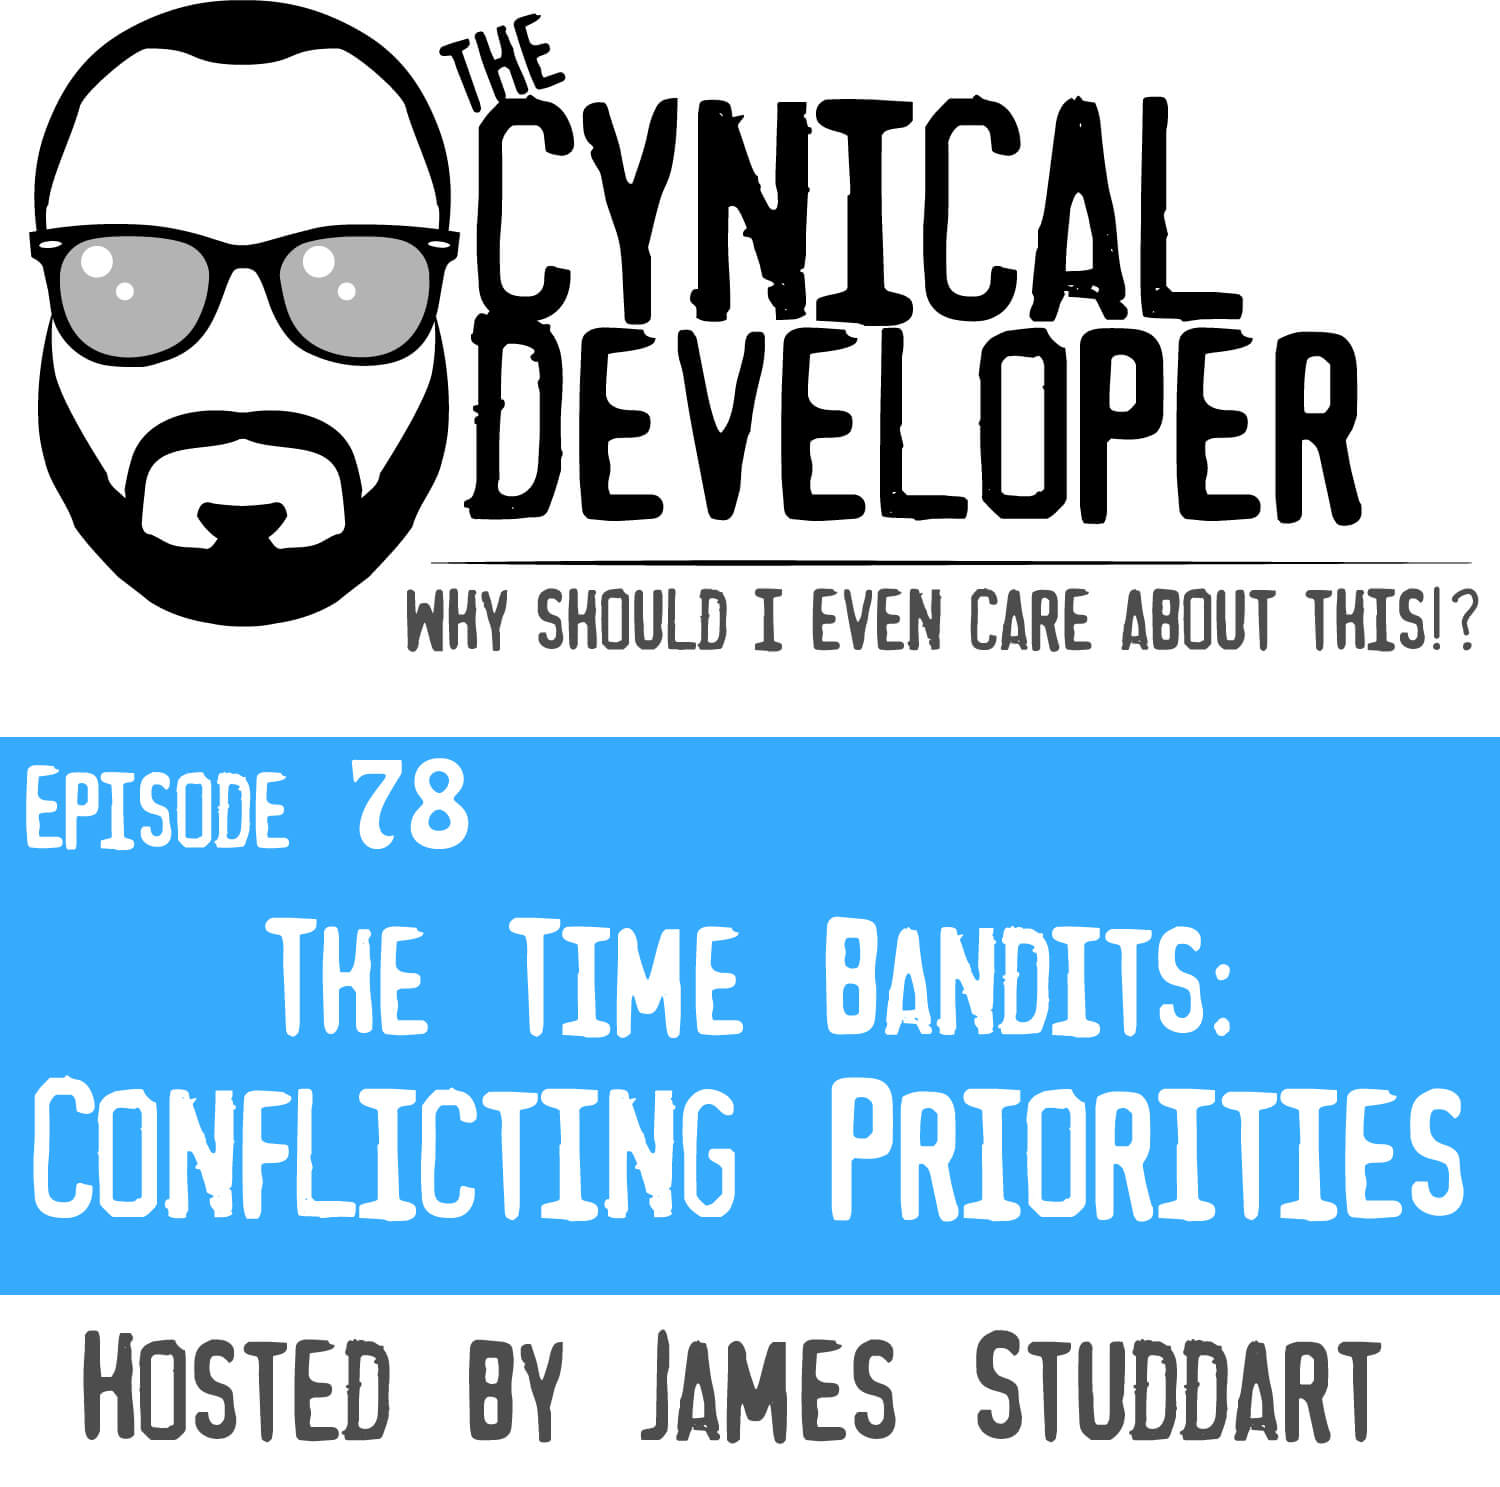 Episode 78 - Conflicting Priorities